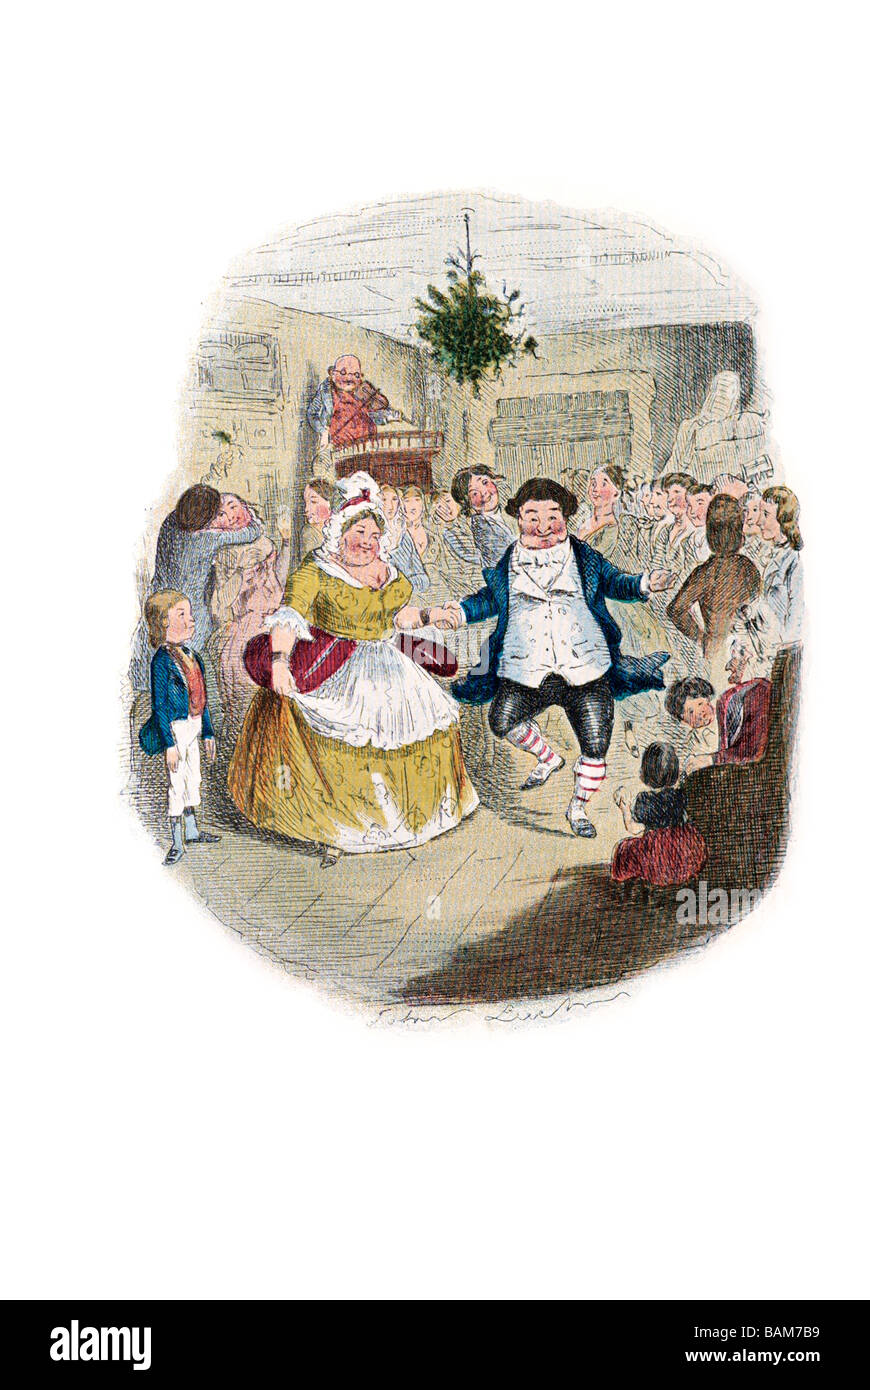 Signor fezziwigg s sfera un canto di Natale in prosa, essendo un fantasma racconto di Natale di Charles Dickens Foto Stock